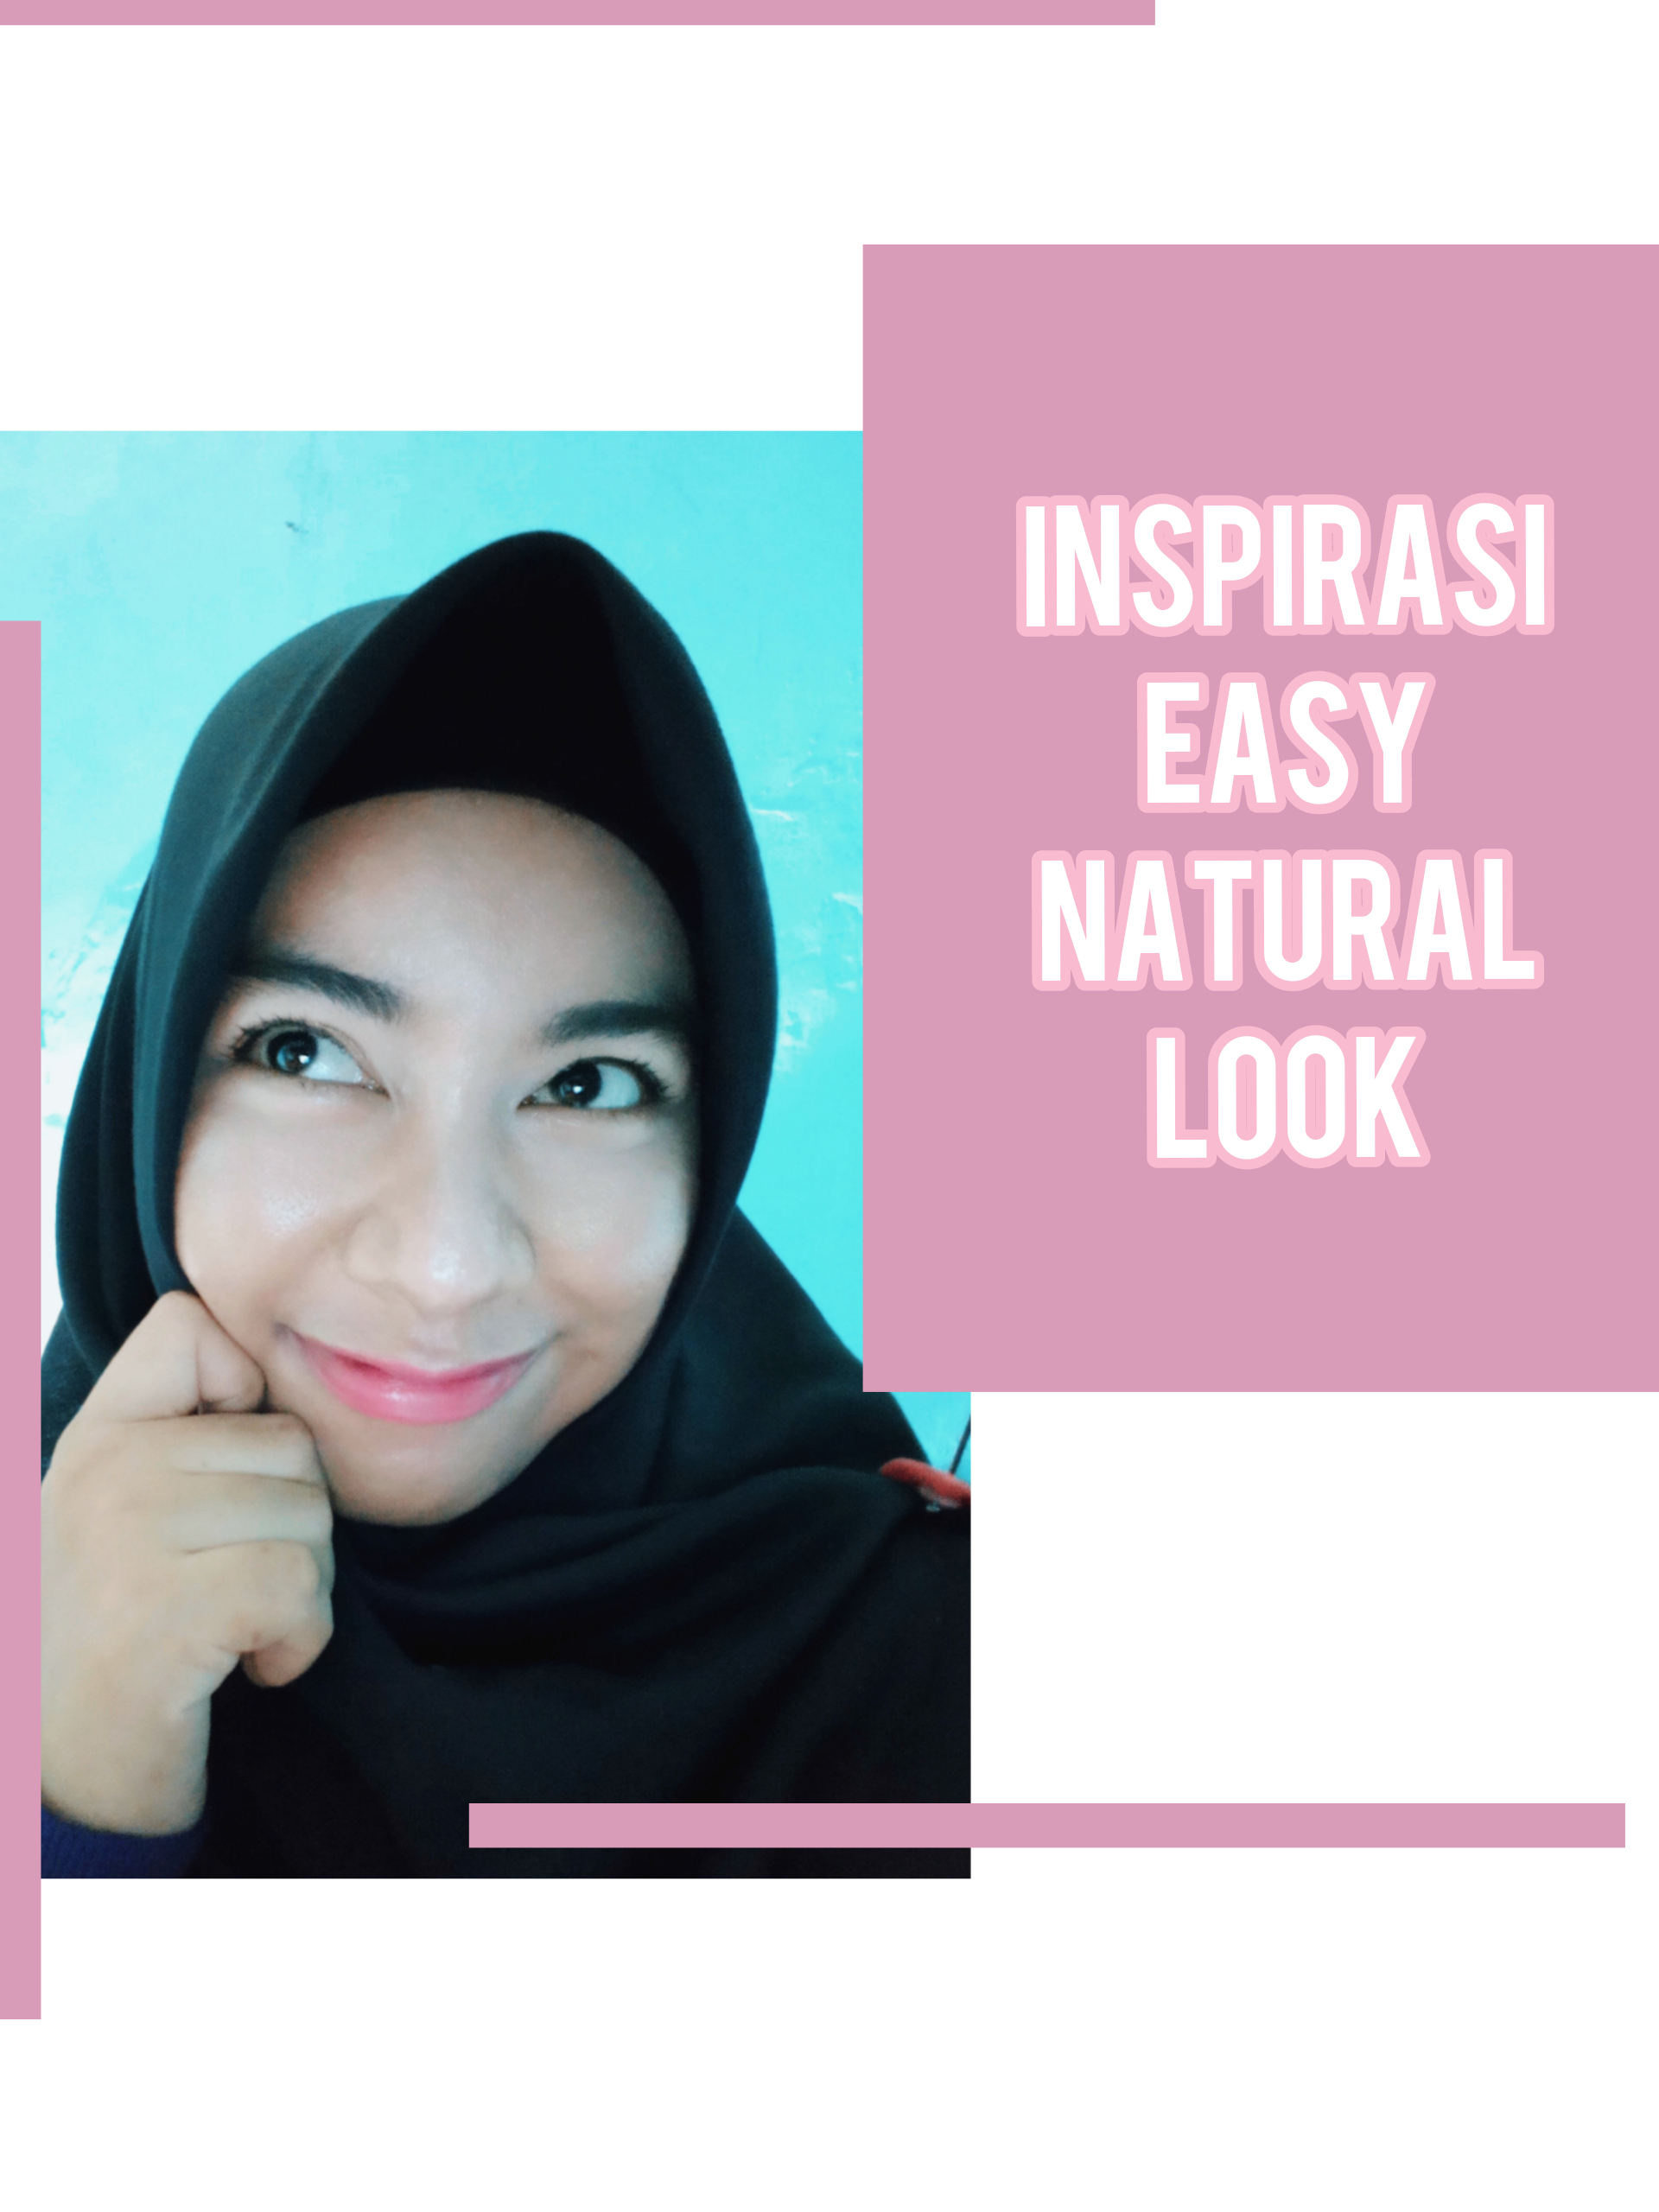 Inspirasi easy natural look